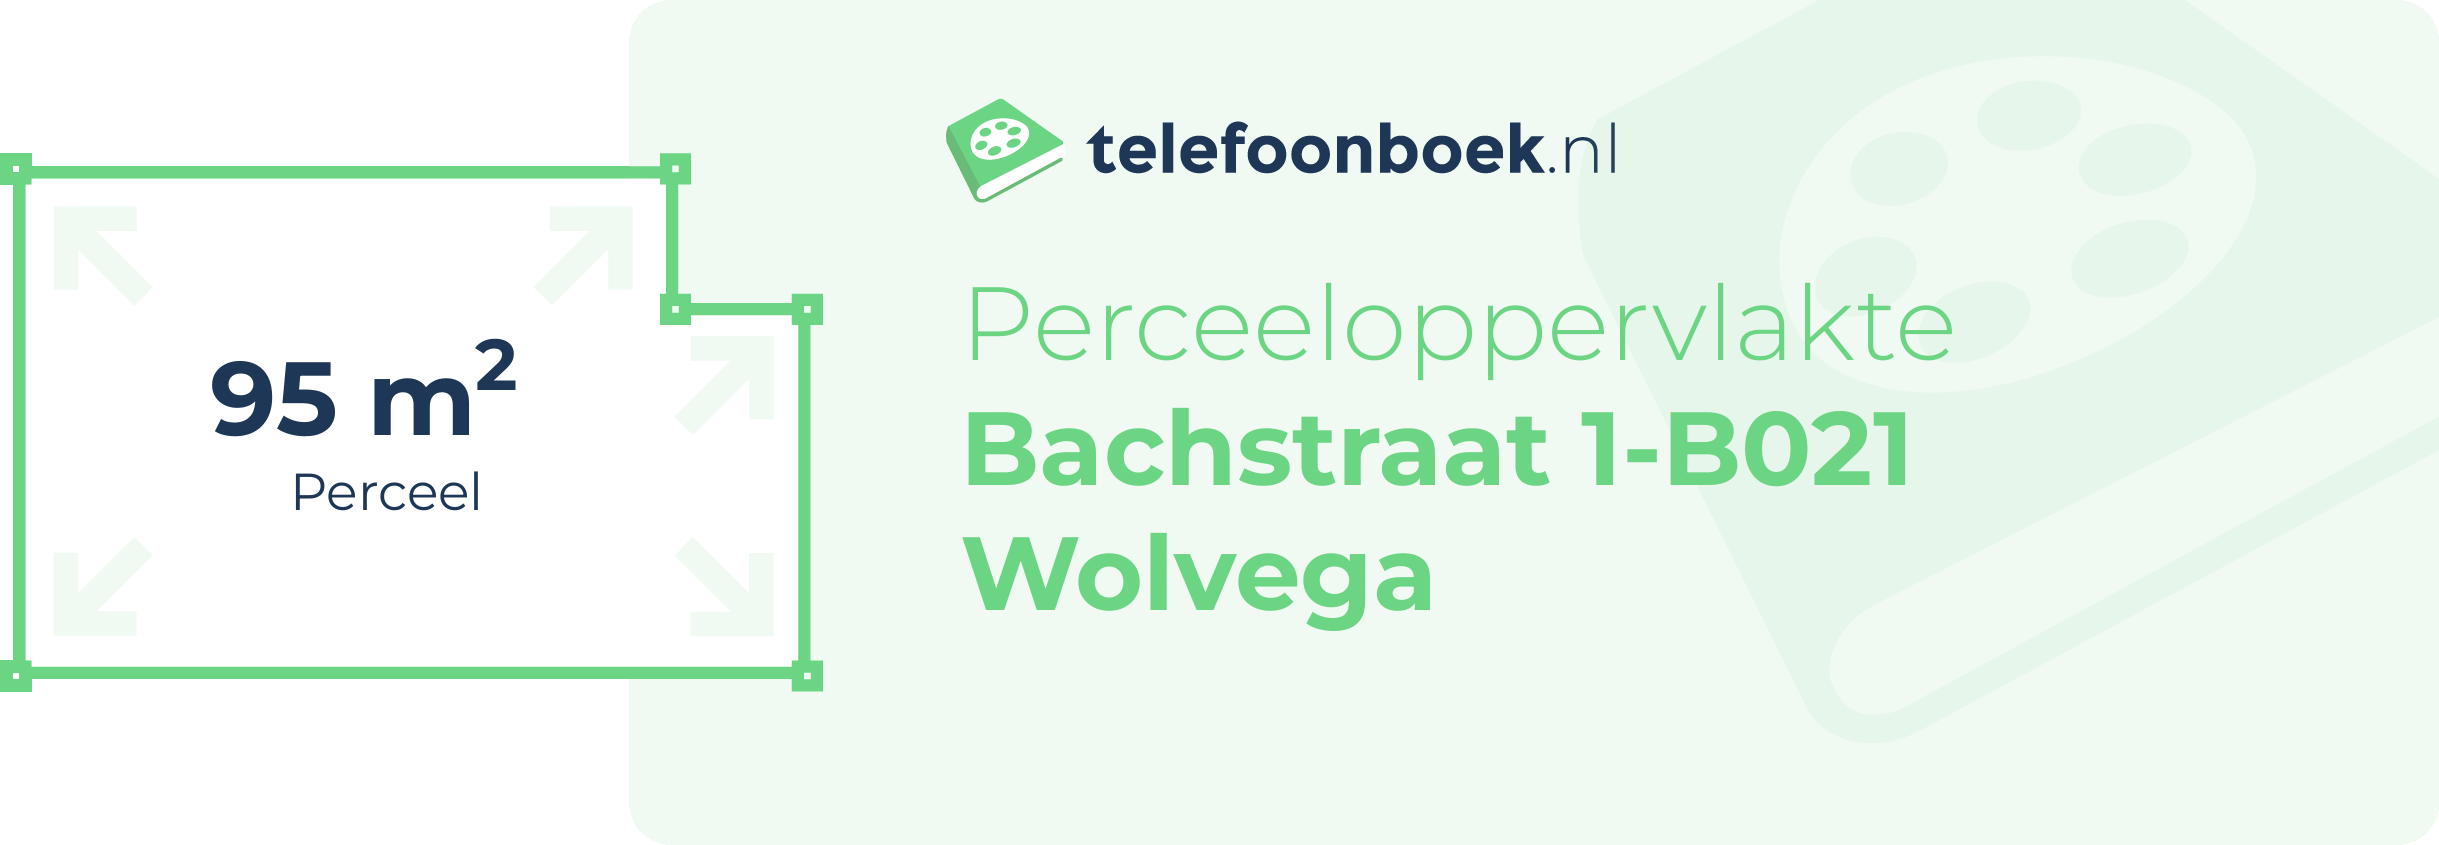 Perceeloppervlakte Bachstraat 1-B021 Wolvega